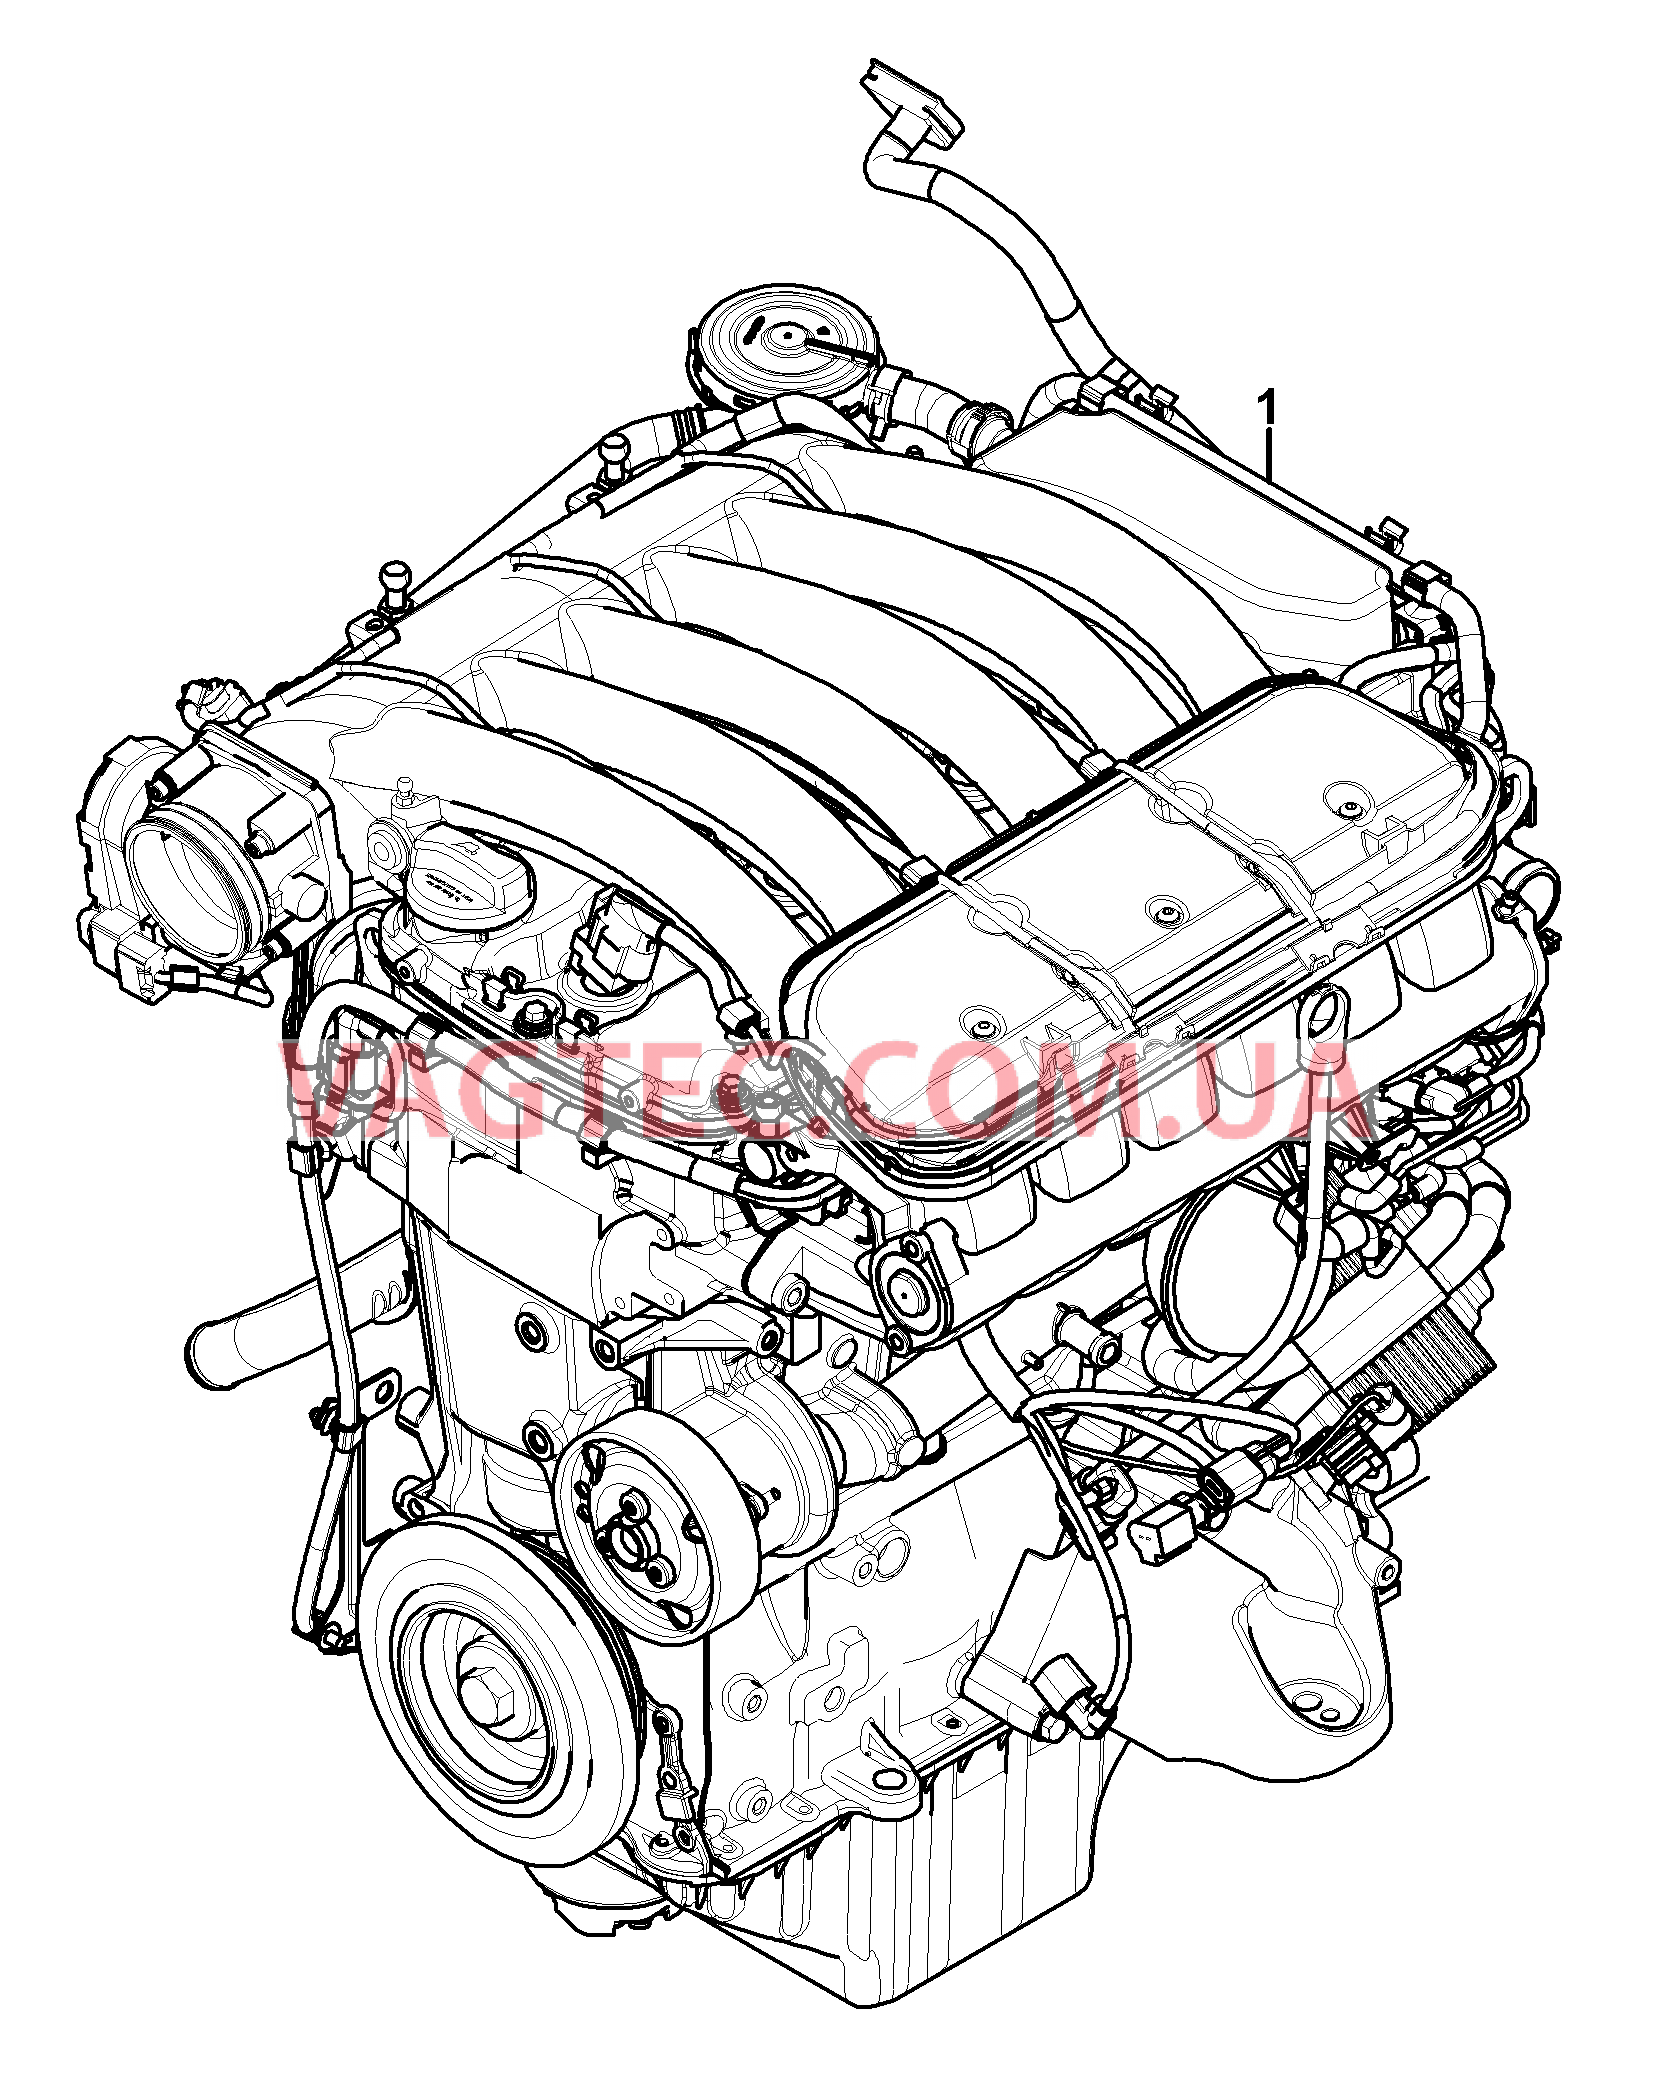 101-001 Запасной двигатель
						
						M02.2Y для PORSCHE Cayenne 2003-2006